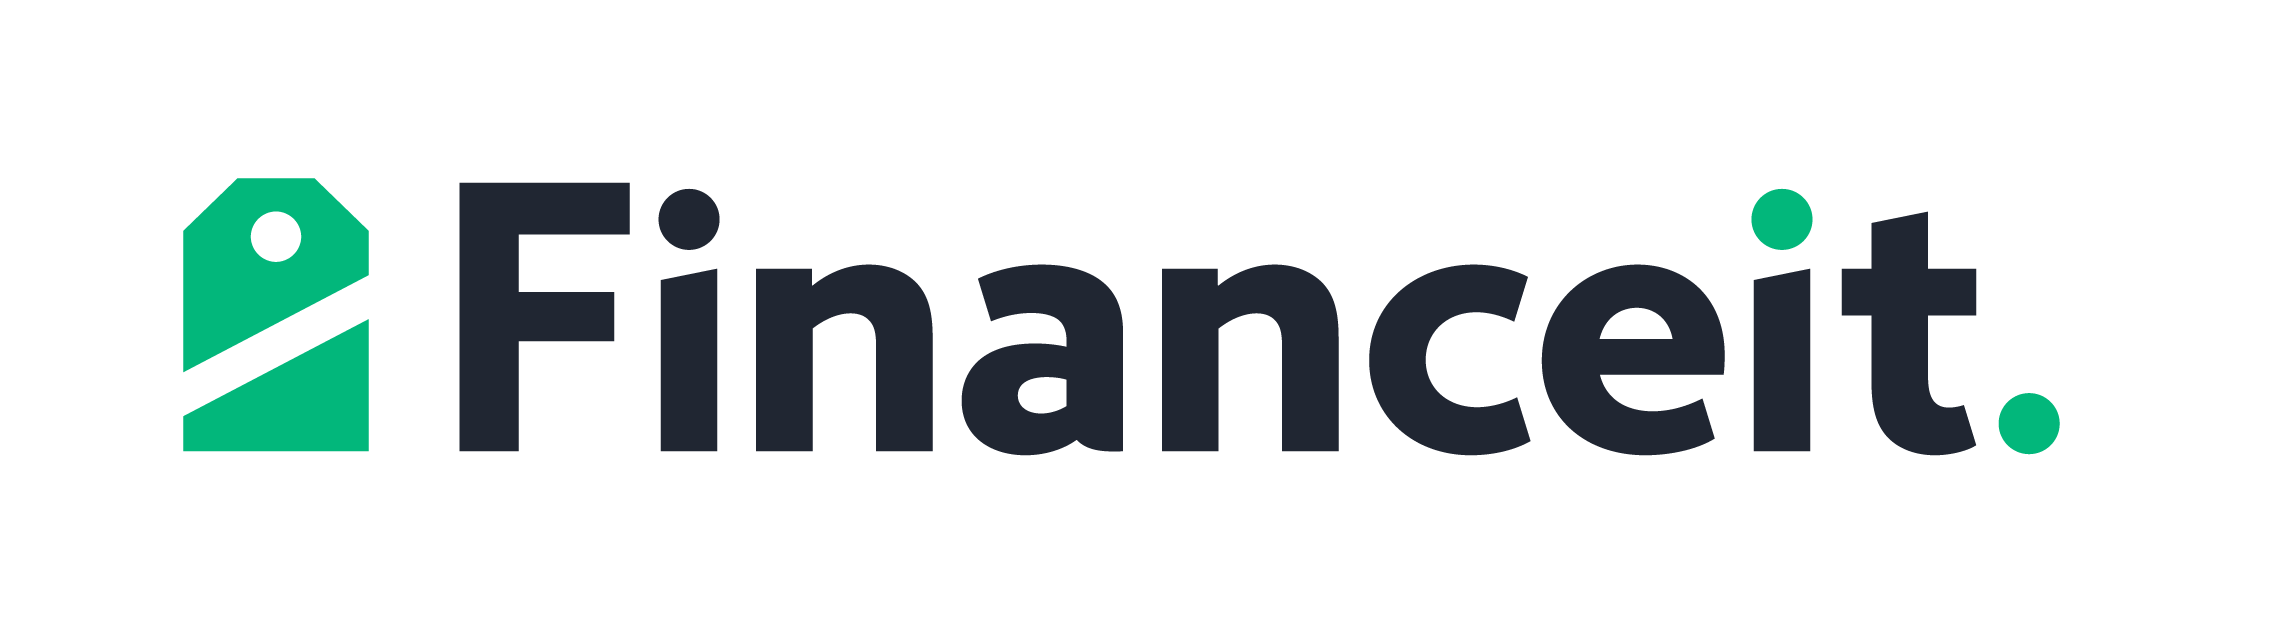 snap financial logo